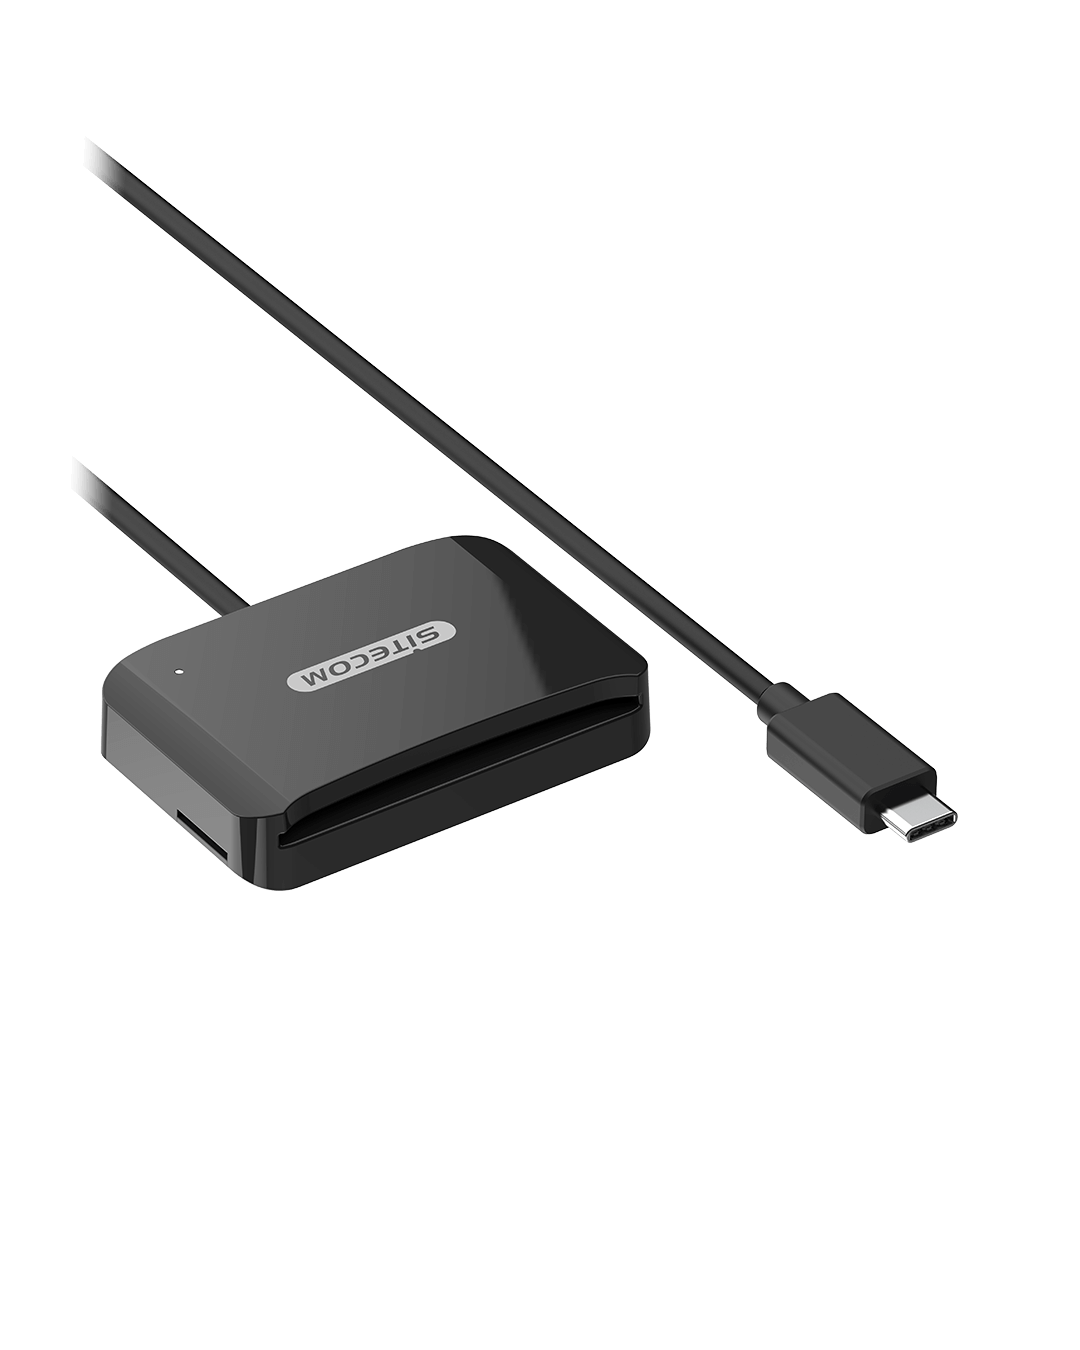 Sitecom - USB-C ID Card Reader - MD-1002